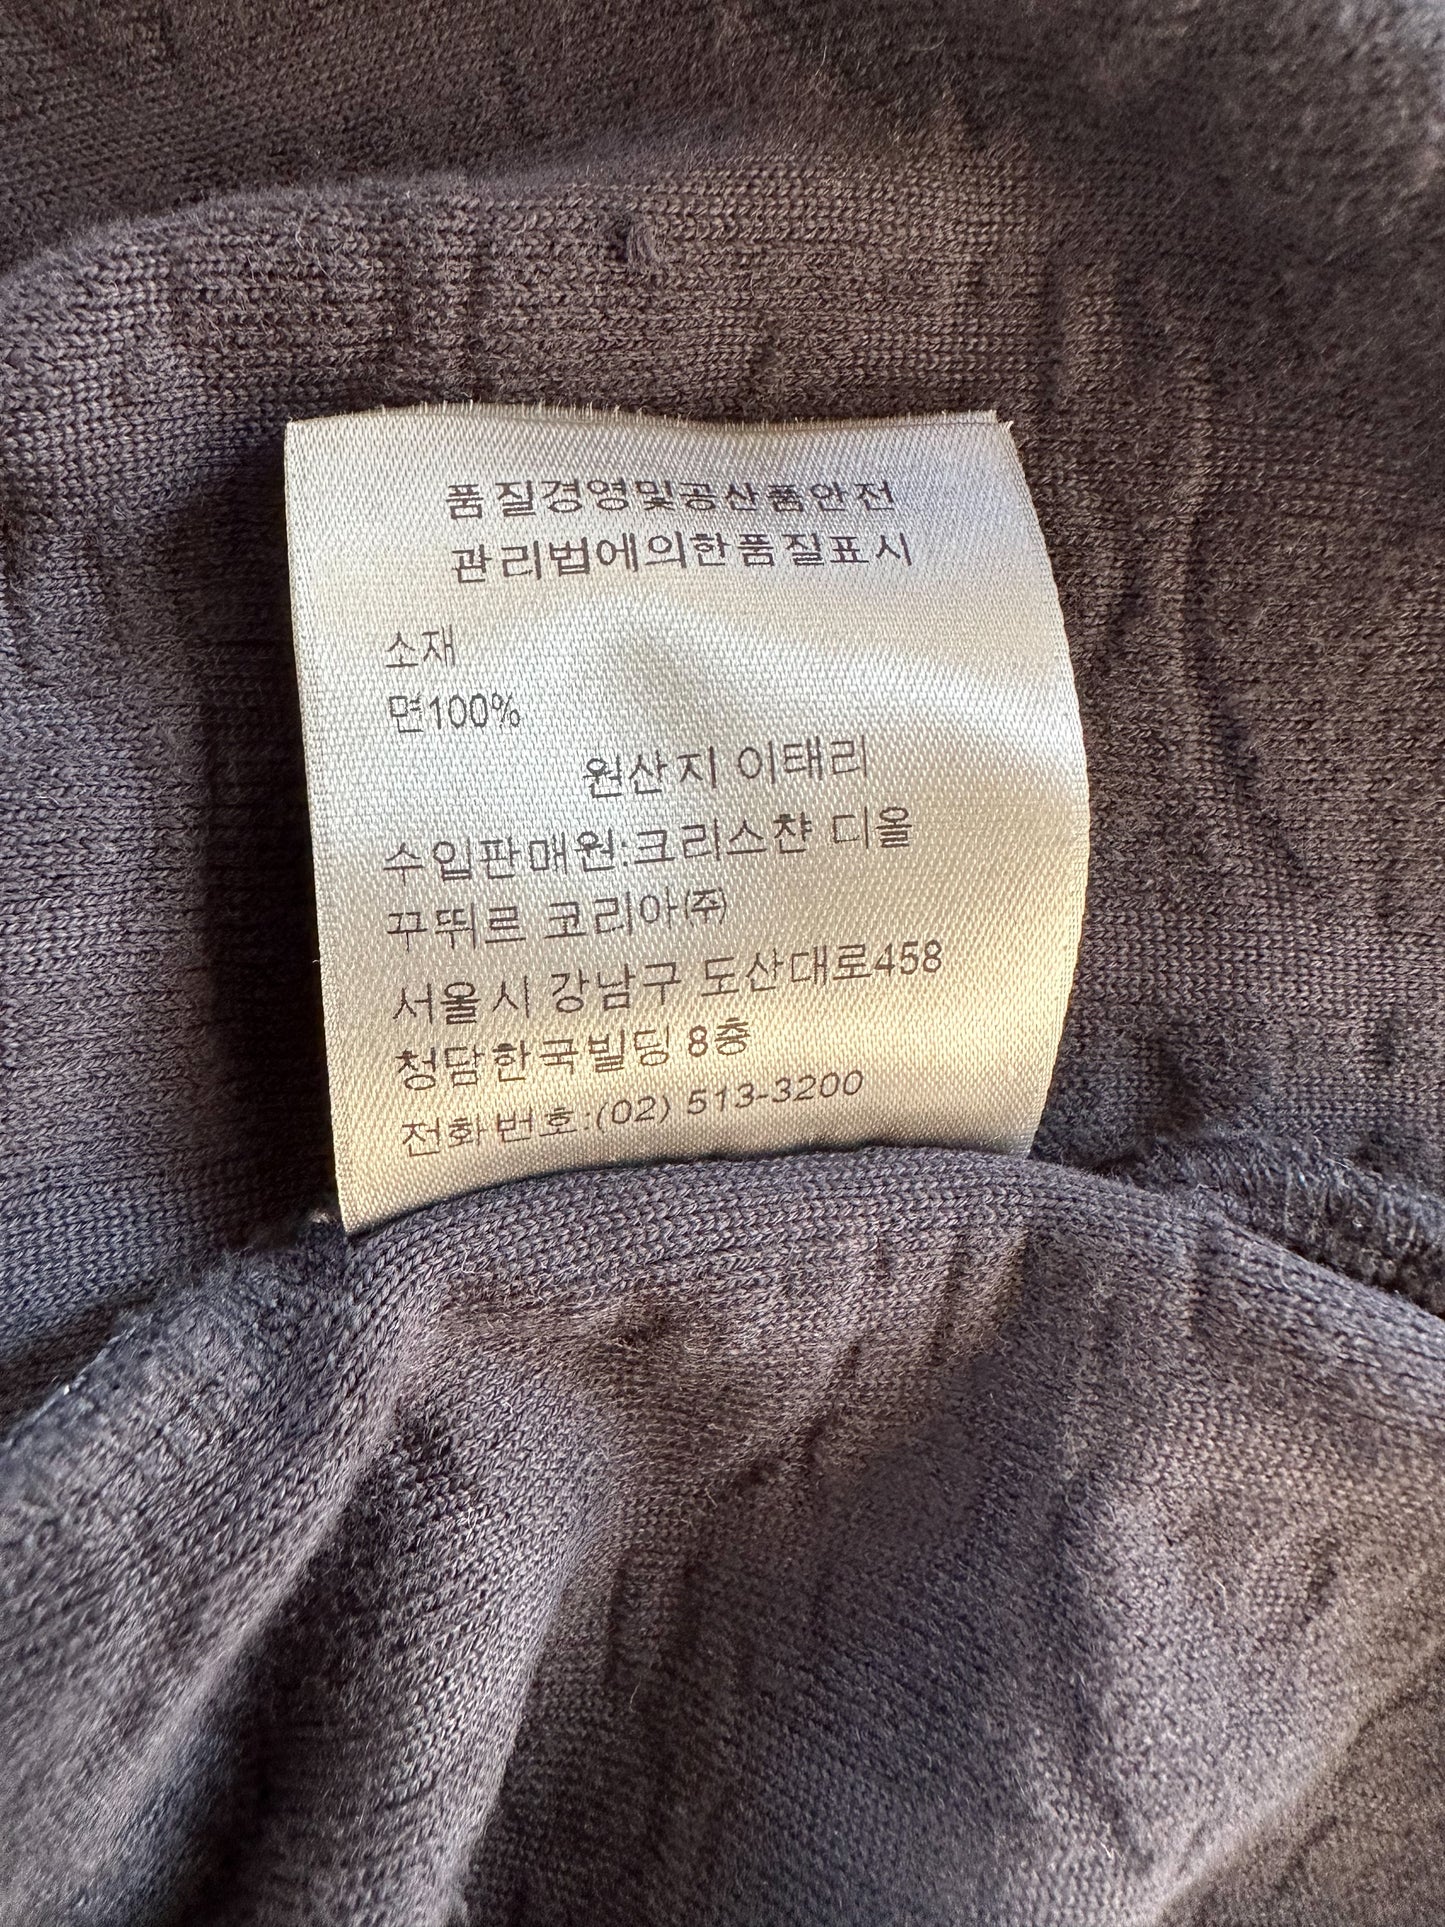 Dior Navy Oblique Towel T-Shirt